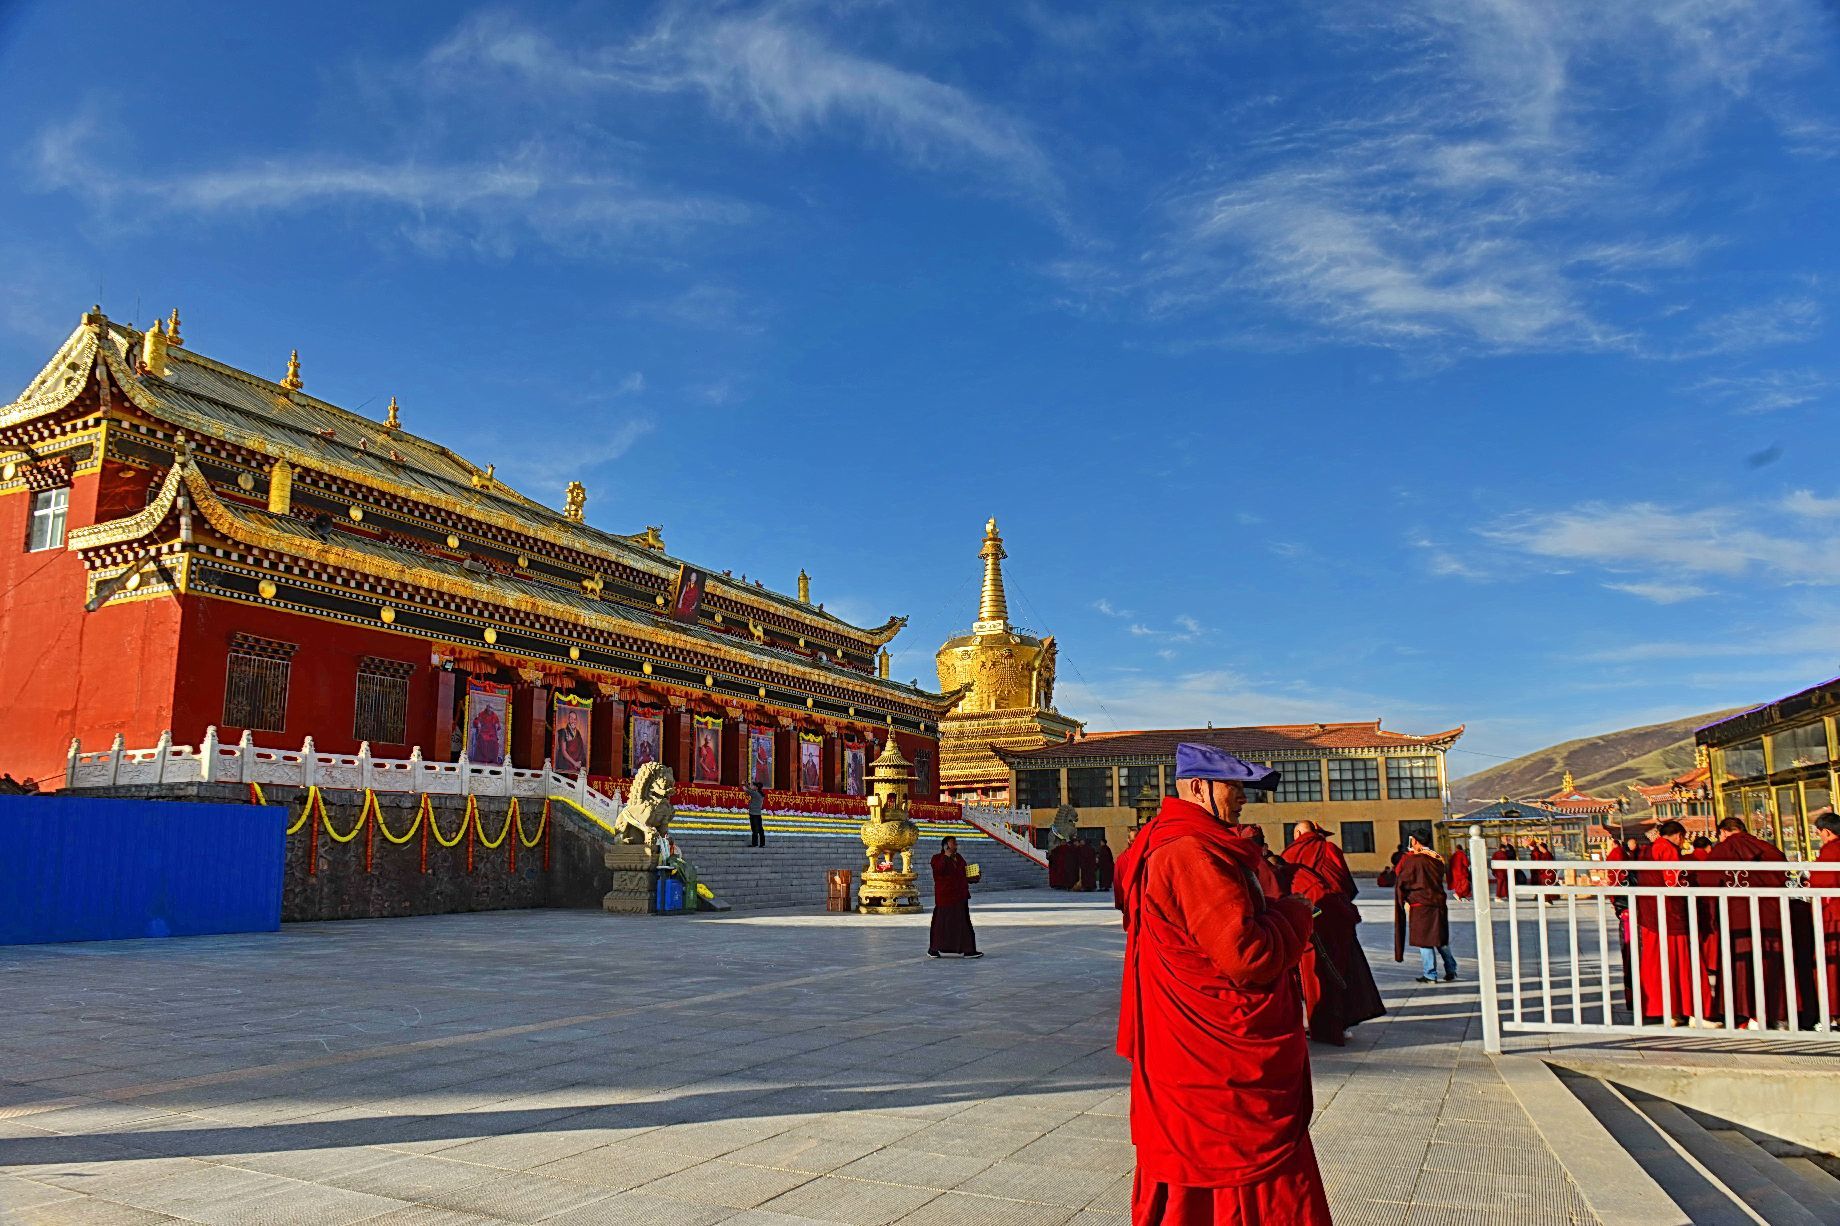 查郎寺由郎喇嘛曲吉多杰始建于1895年，系藏传佛教宁玛派，含有附属宗教活动点一所和格萨尔狮龙宫殿。改